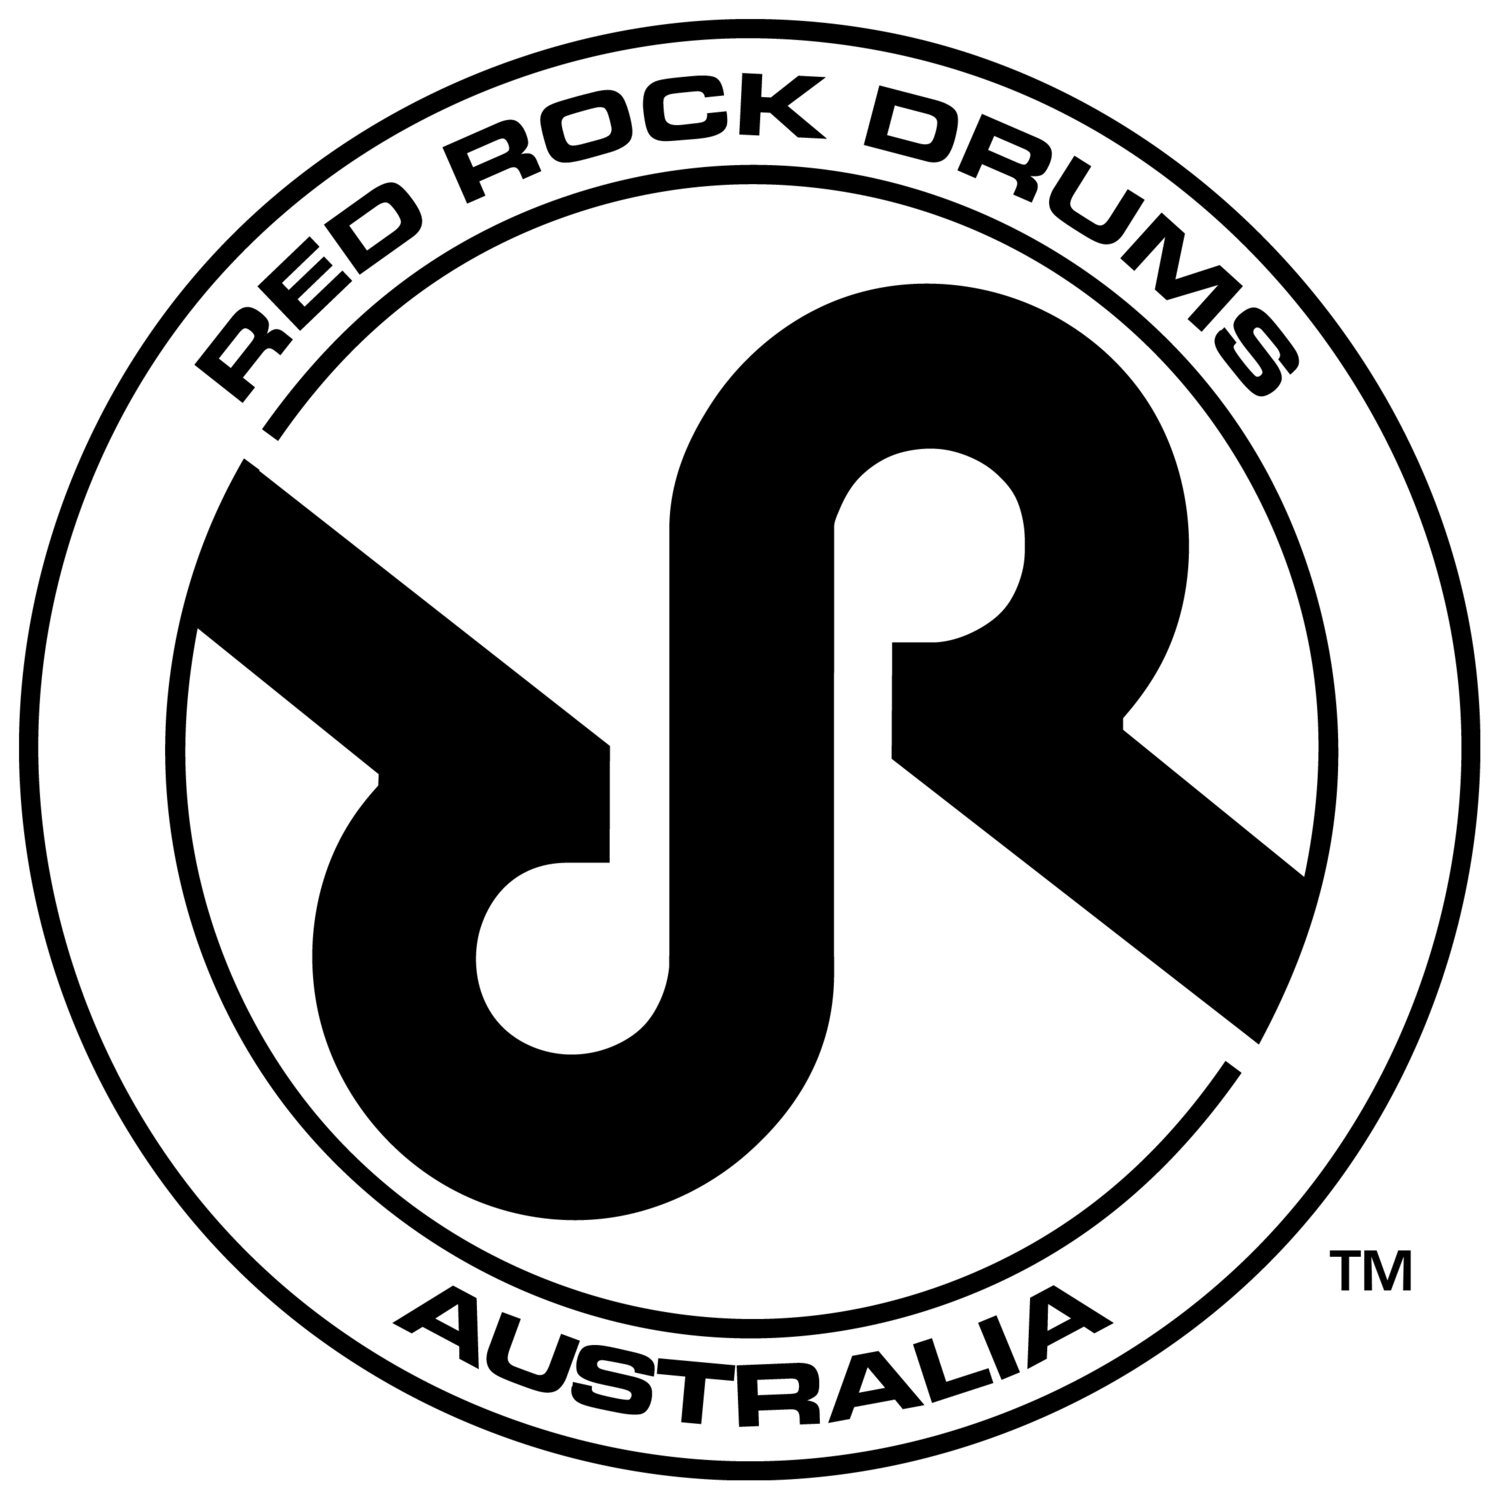 www.redrockdrums.com.au